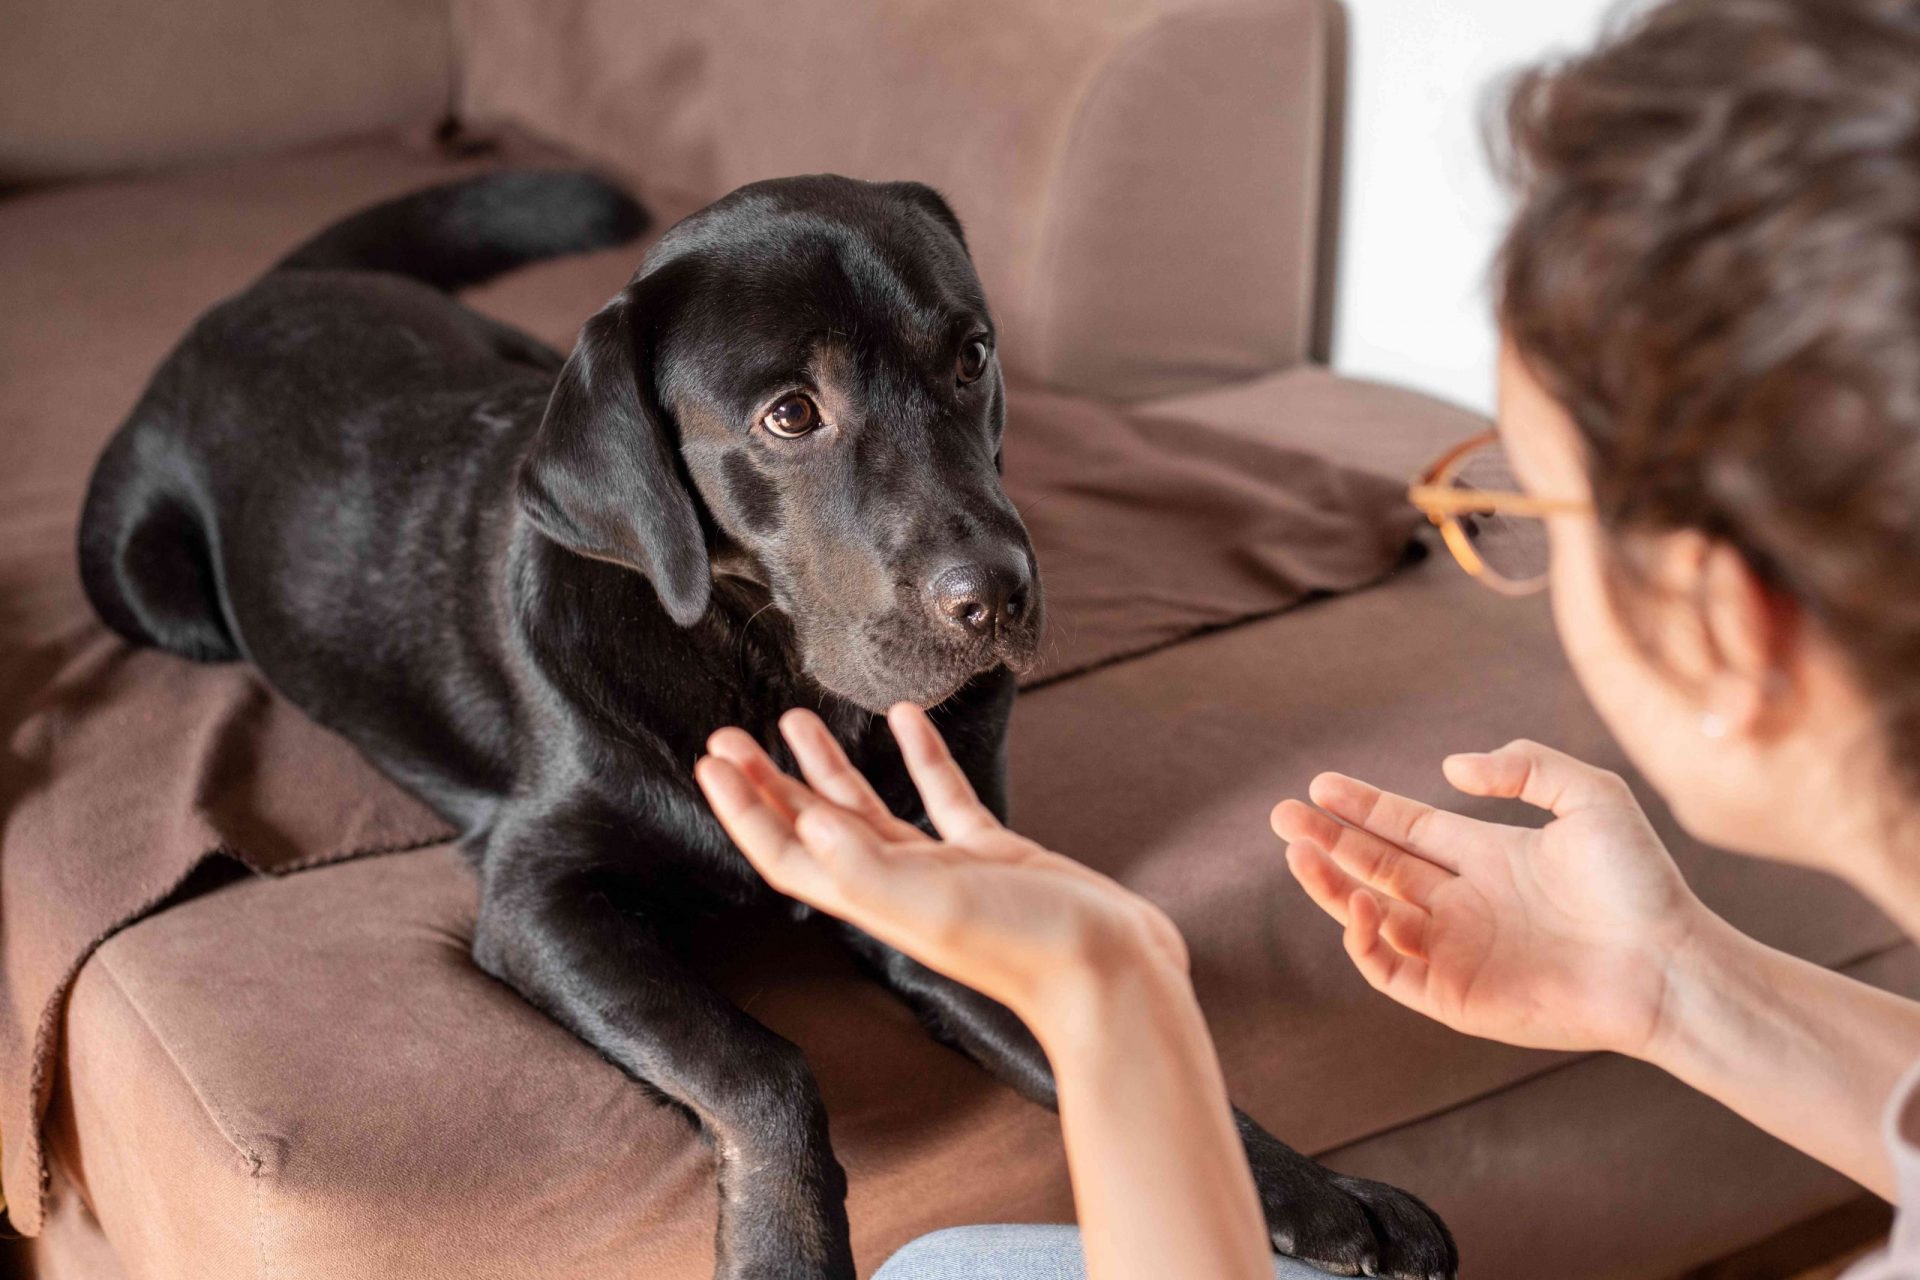 una persona habla al perro haciendo gestos con las manos mientras el perro parece confundido